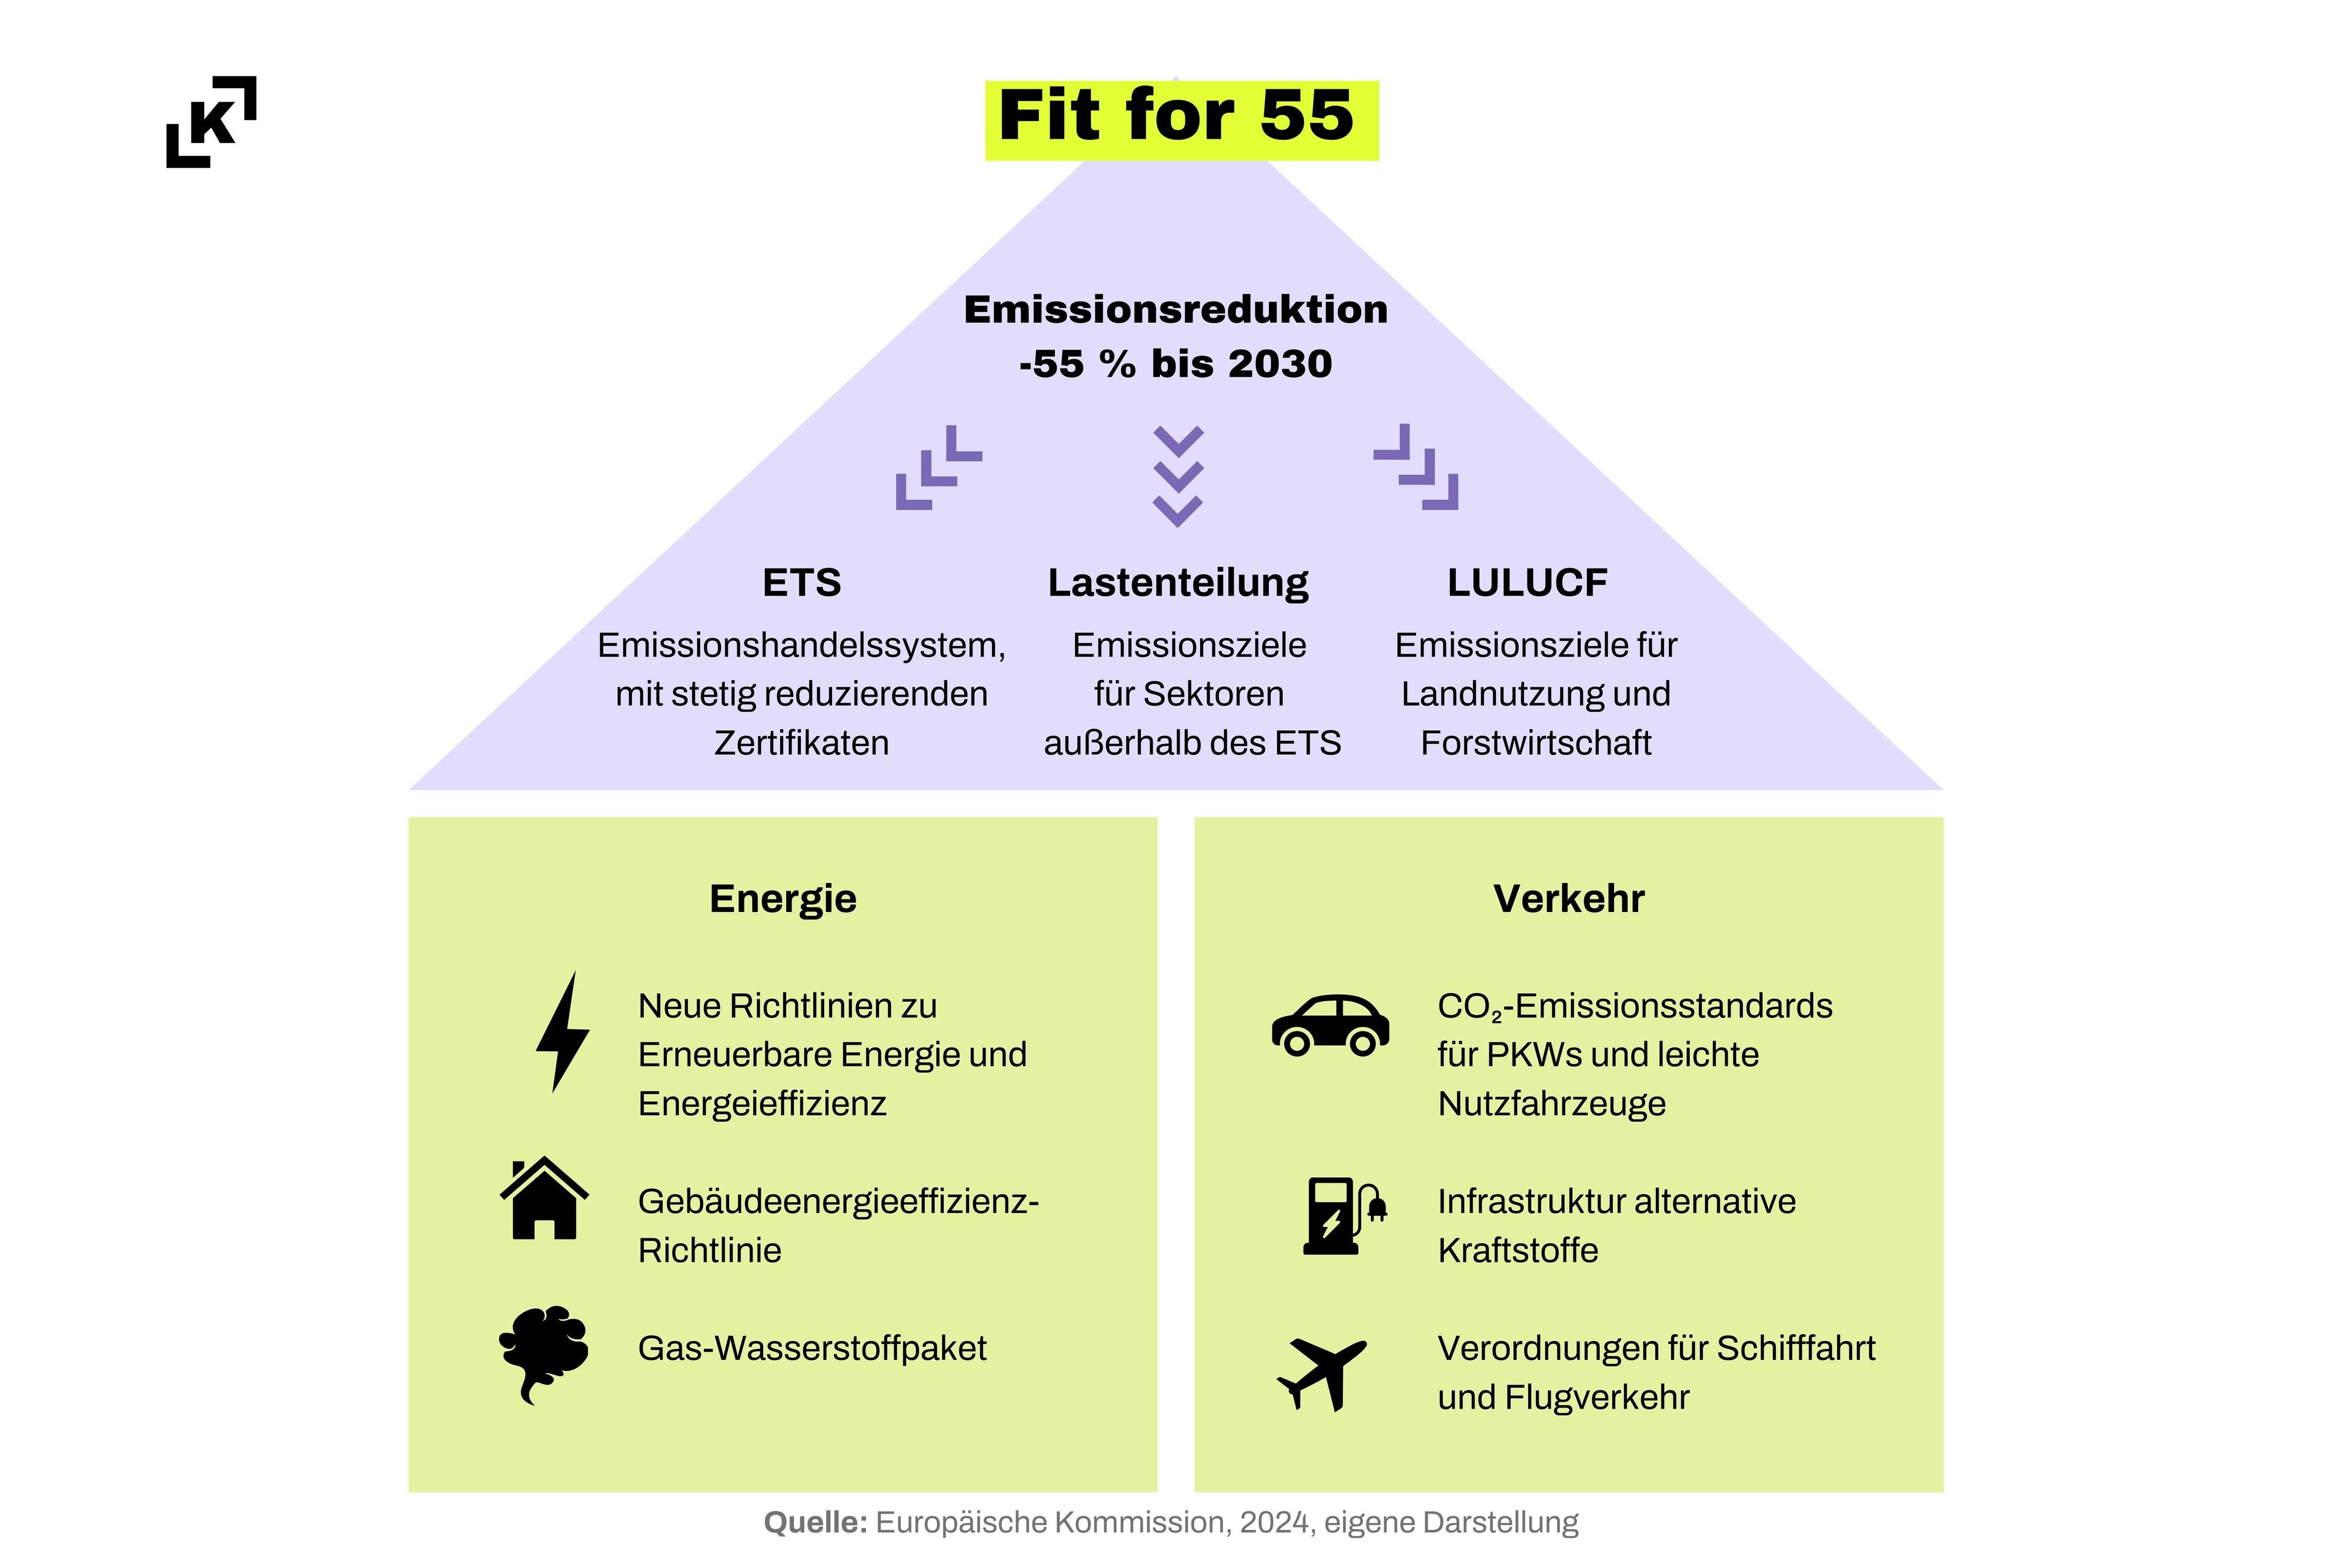 „Fit für 55“ ist ein EU-Plan für den grünen Wandel, der Name bezieht sich auf das Ziel, die Netto-Treibhausgasemissionen bis 2030 um mindestens 55 % zu senken